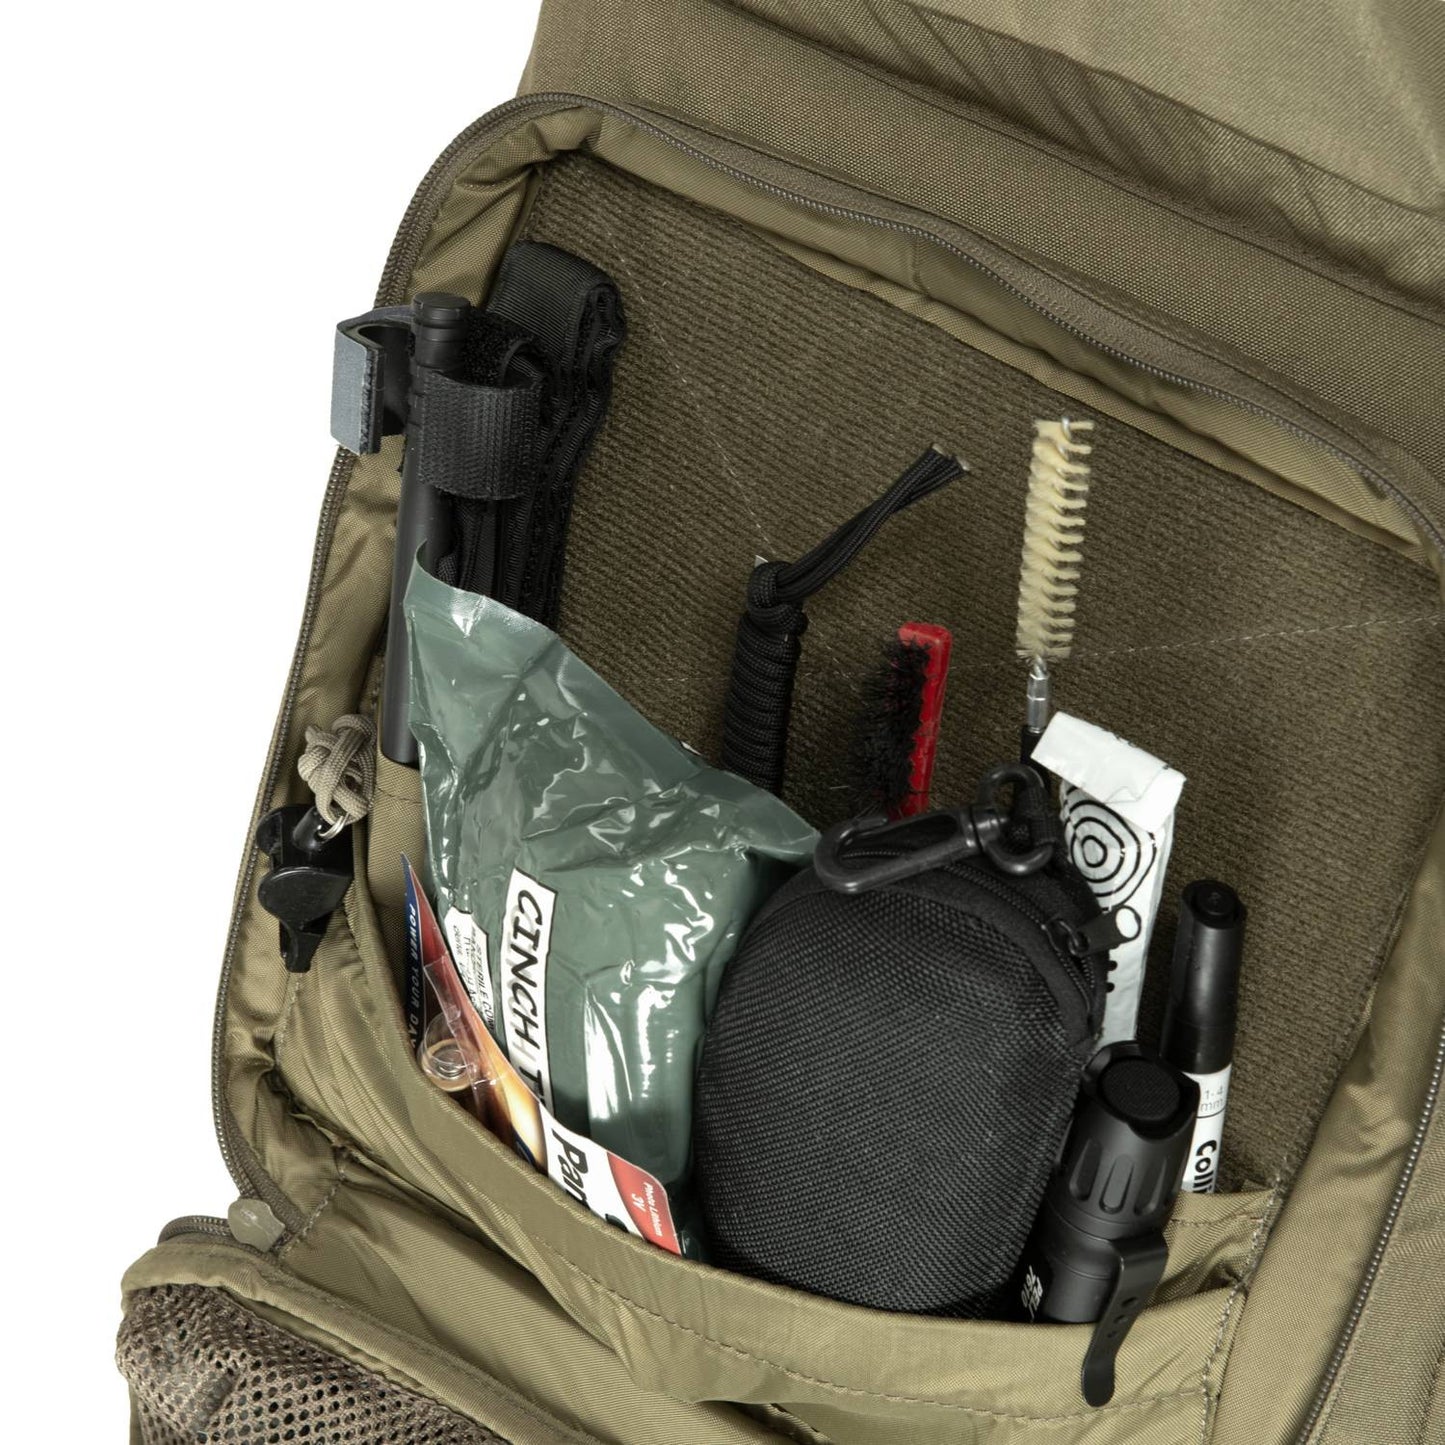 Helikon SBR® 肩背式步槍槍袋：專業射手的必備裝備